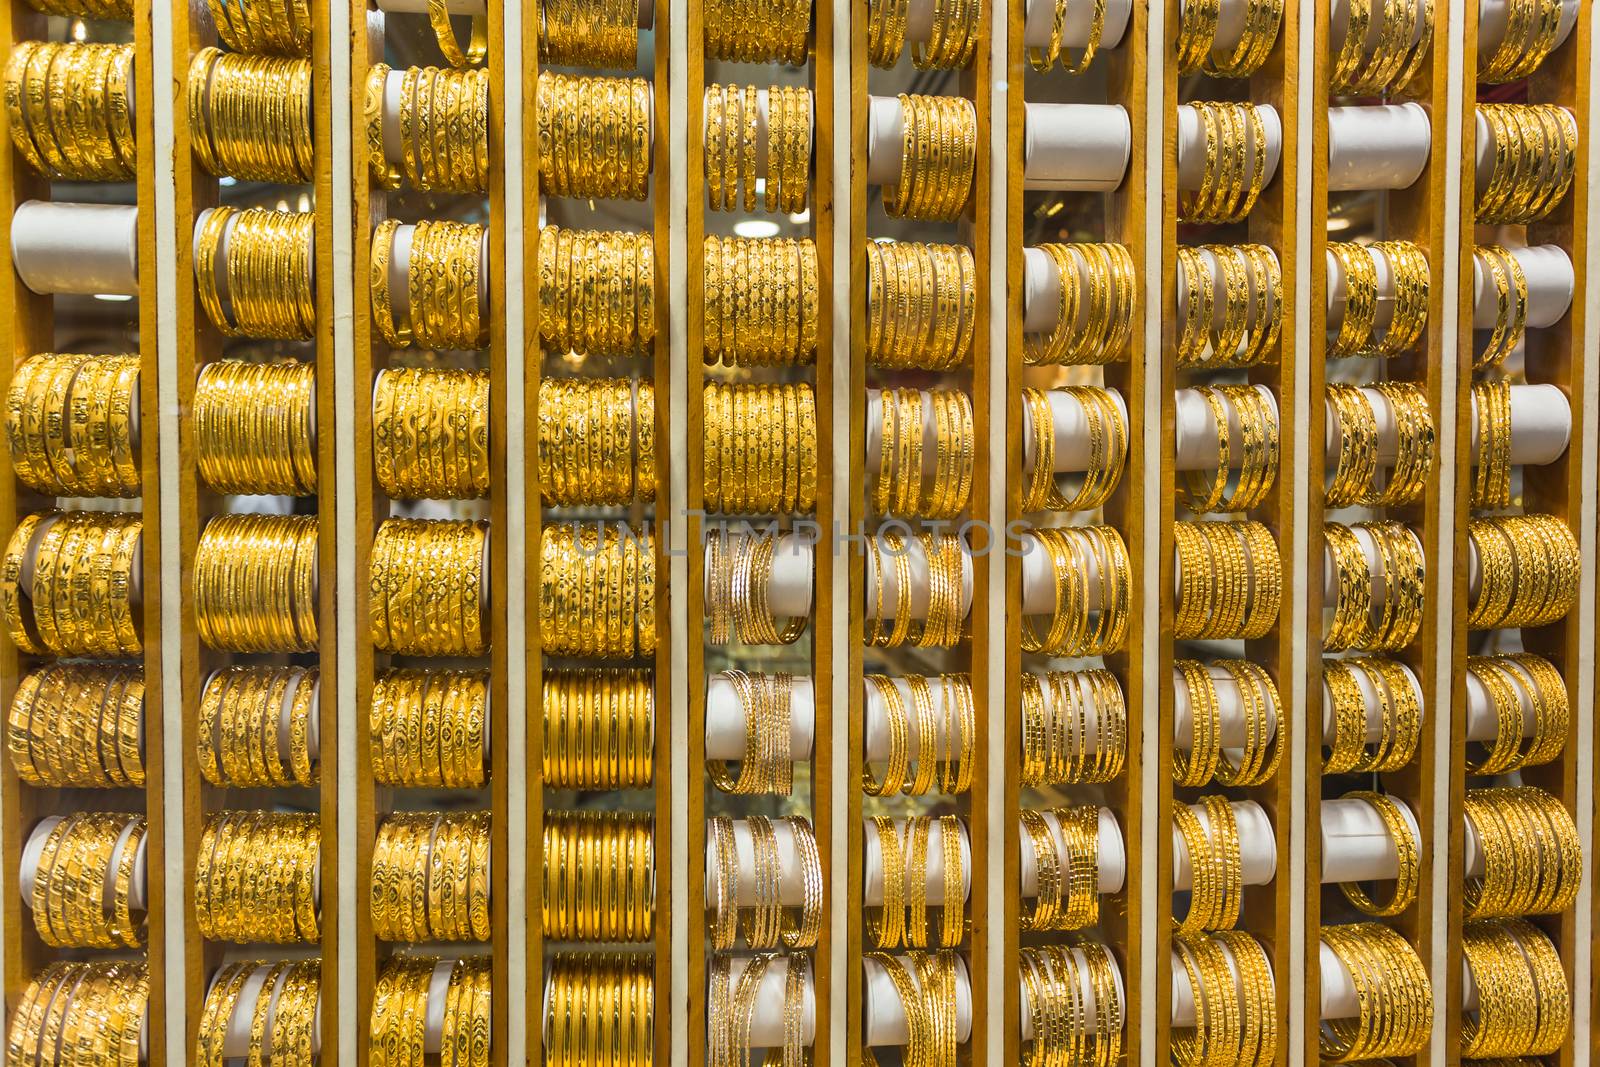 Gold market in Duba by oleg_zhukov